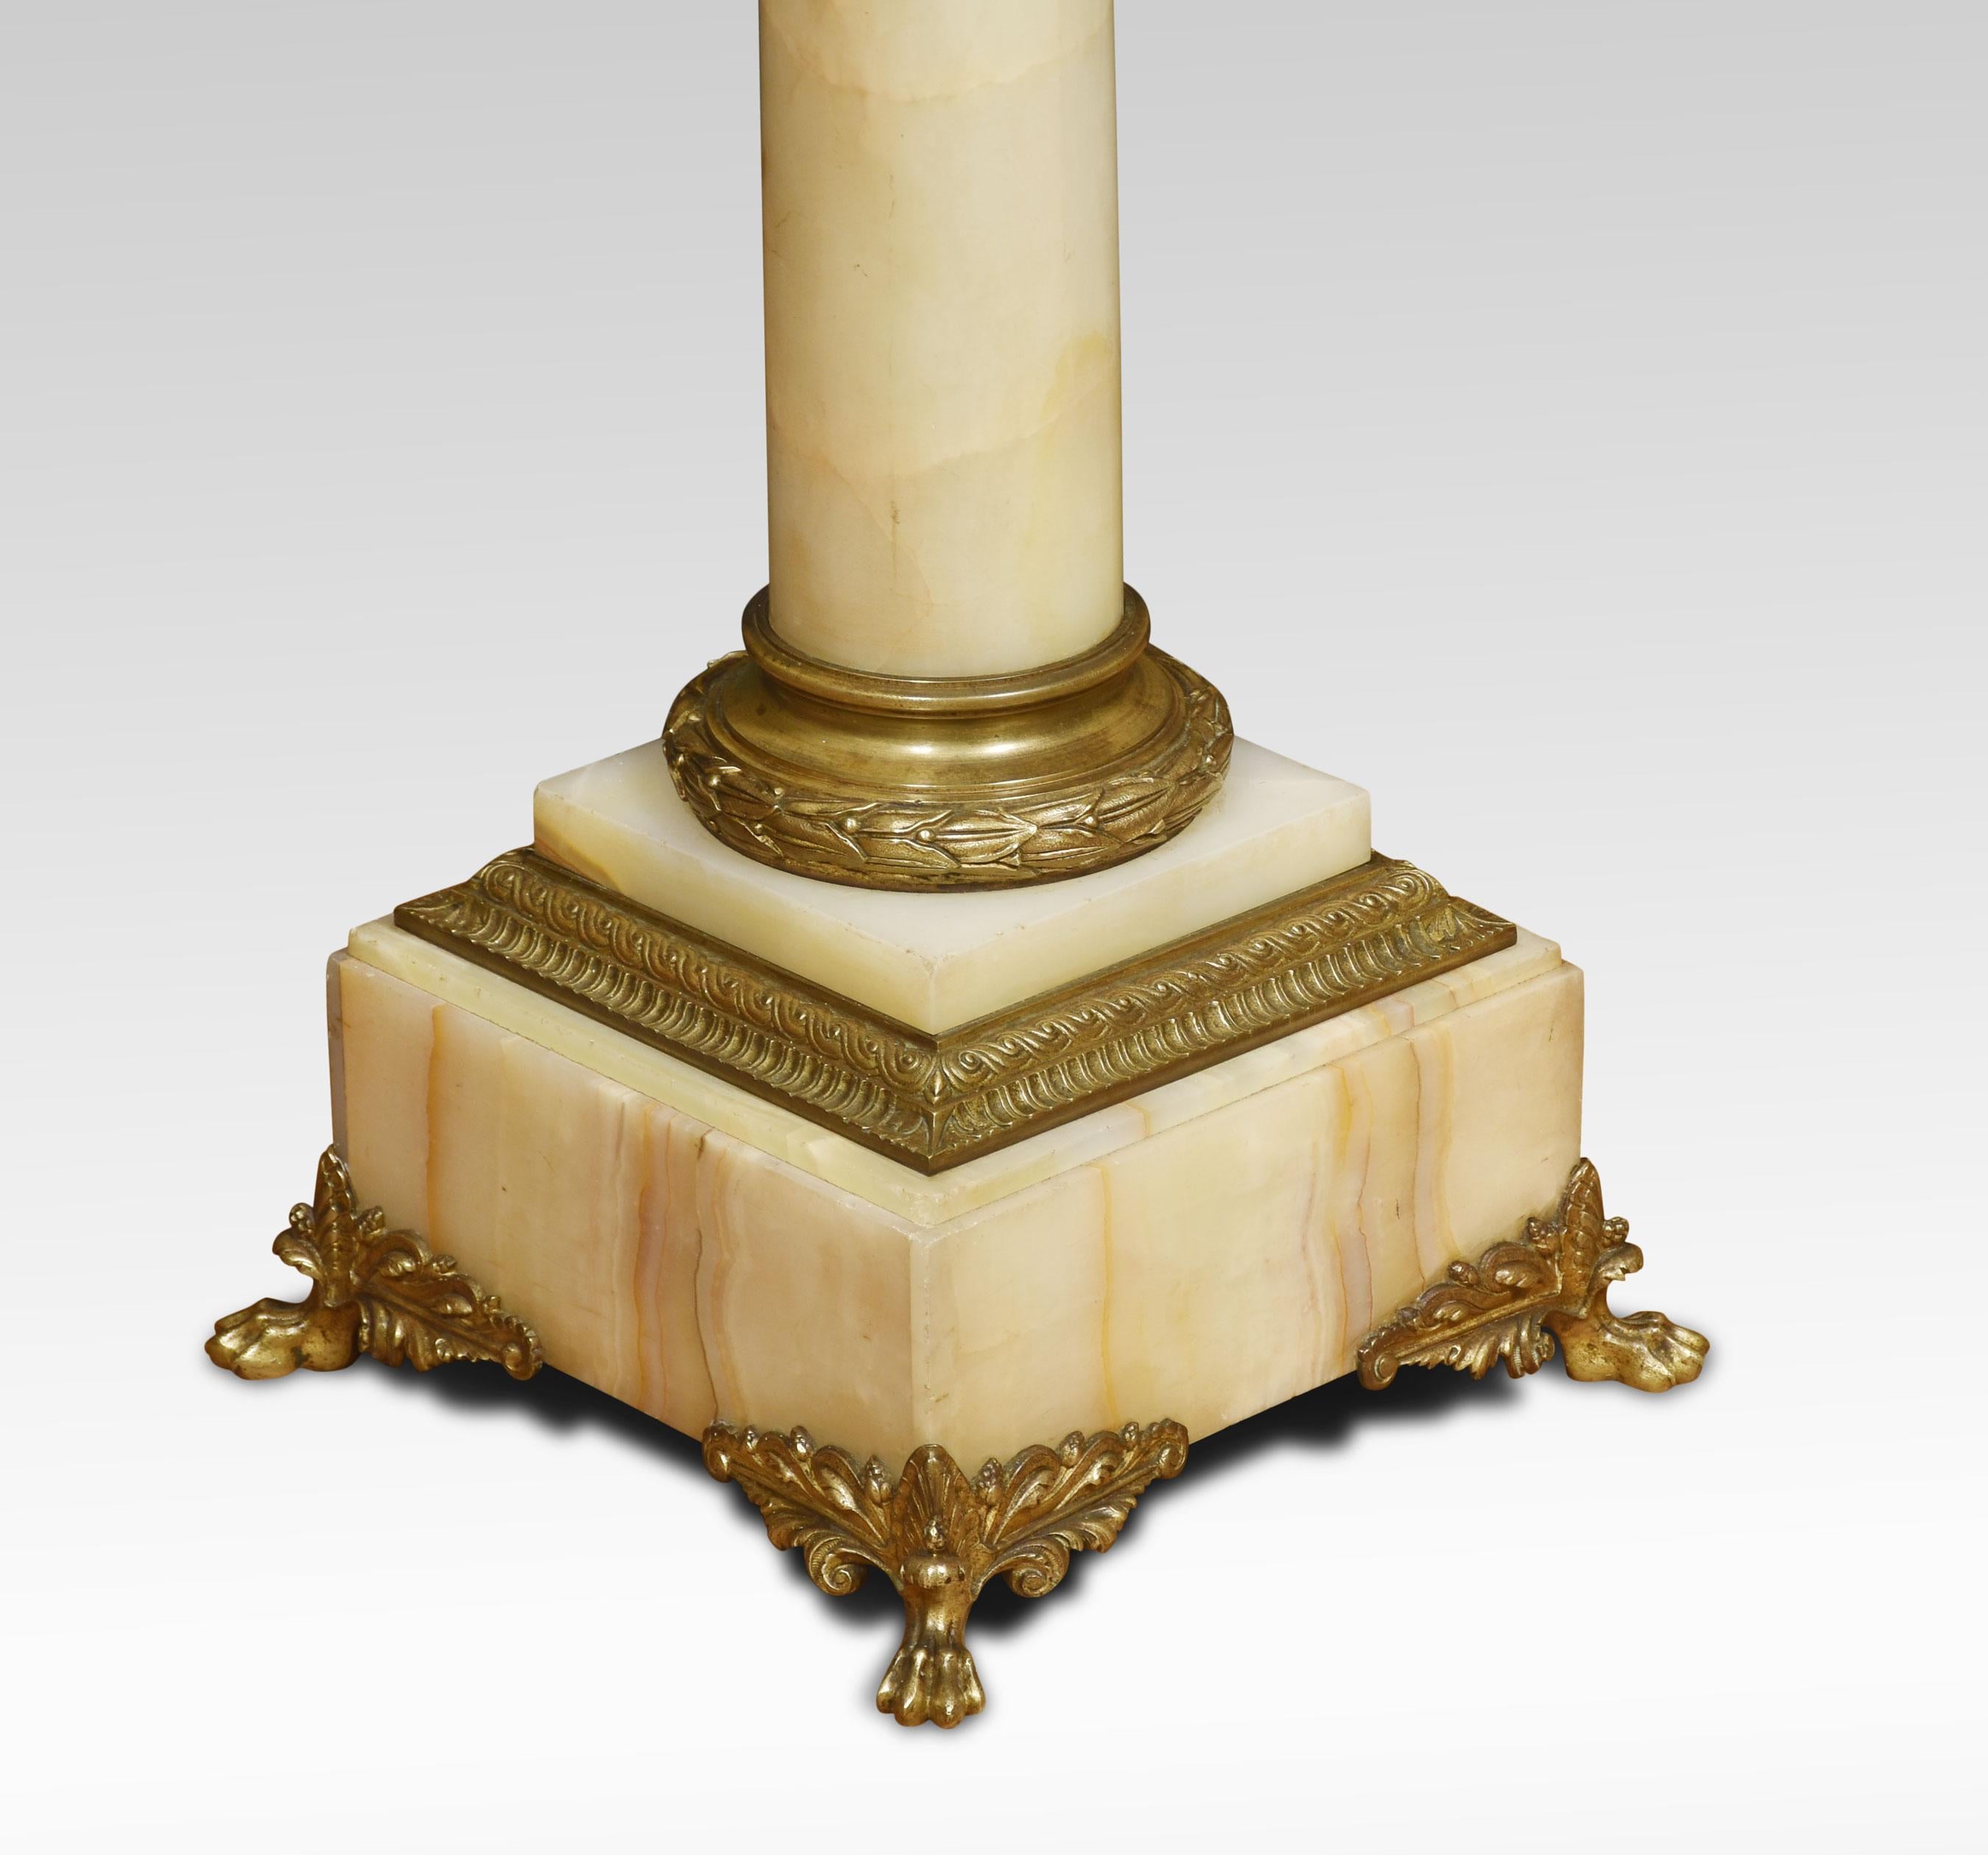 Piédestal en marbre onyx et métal doré, avec un plateau carré au-dessus de socles et de colonnes en fonte et à enroulement de feuilles, reposant sur des plates-formes à gradins, terminées par des pieds en consoles.
Dimensions
Hauteur 43.5